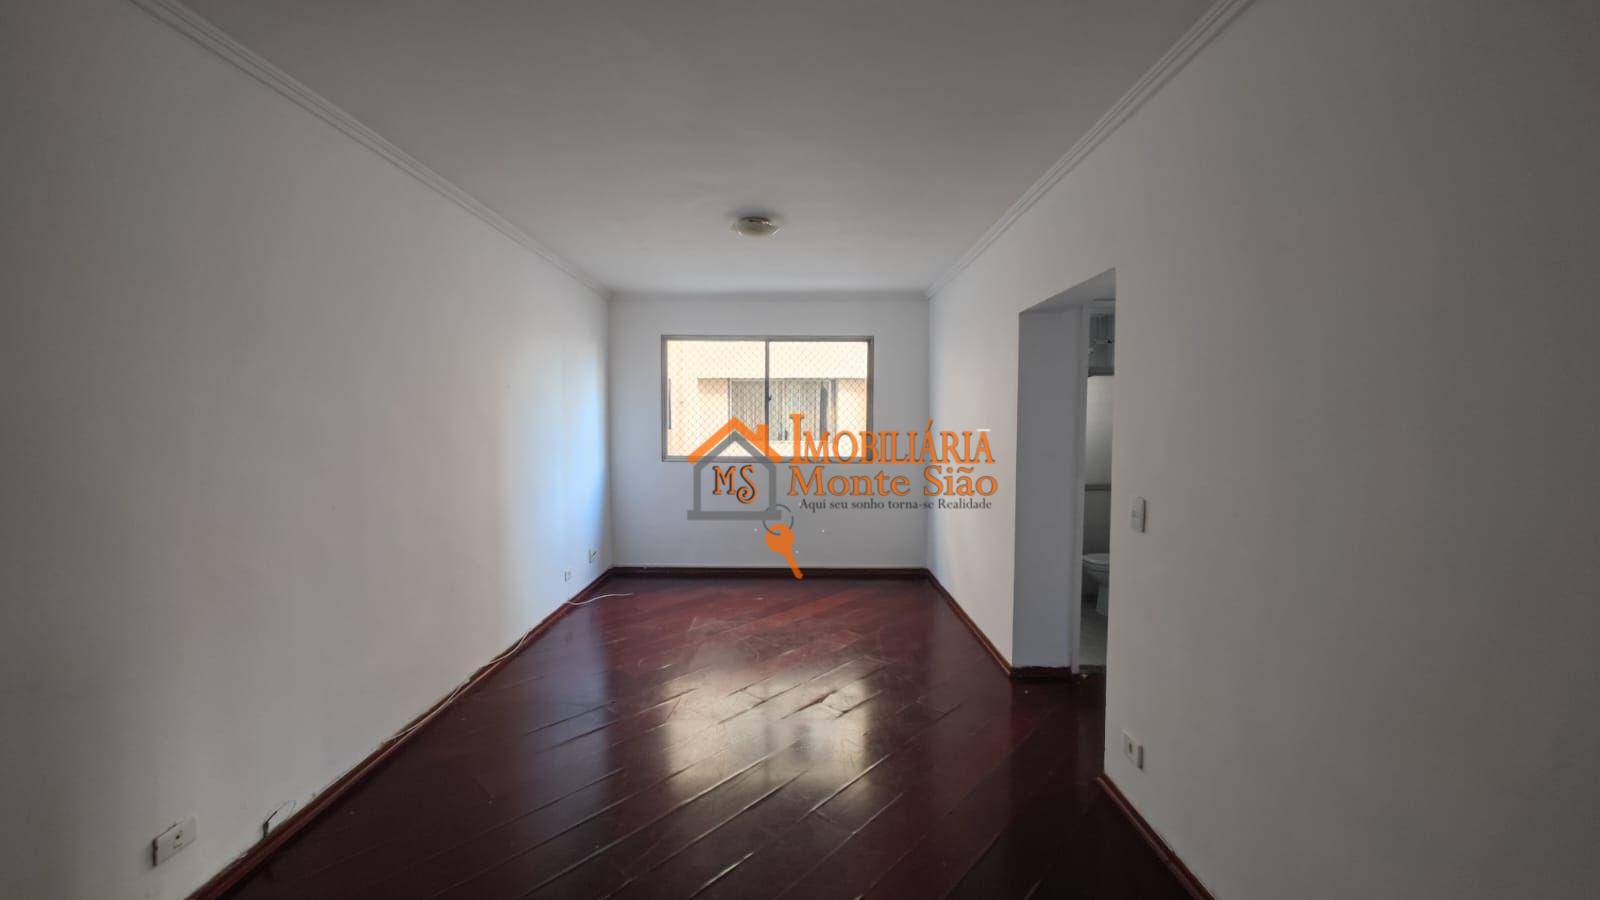 Apartamento com 2 dormitórios à venda, 70 m² por R$ 275.000,00 - Picanco - Guarulhos/SP